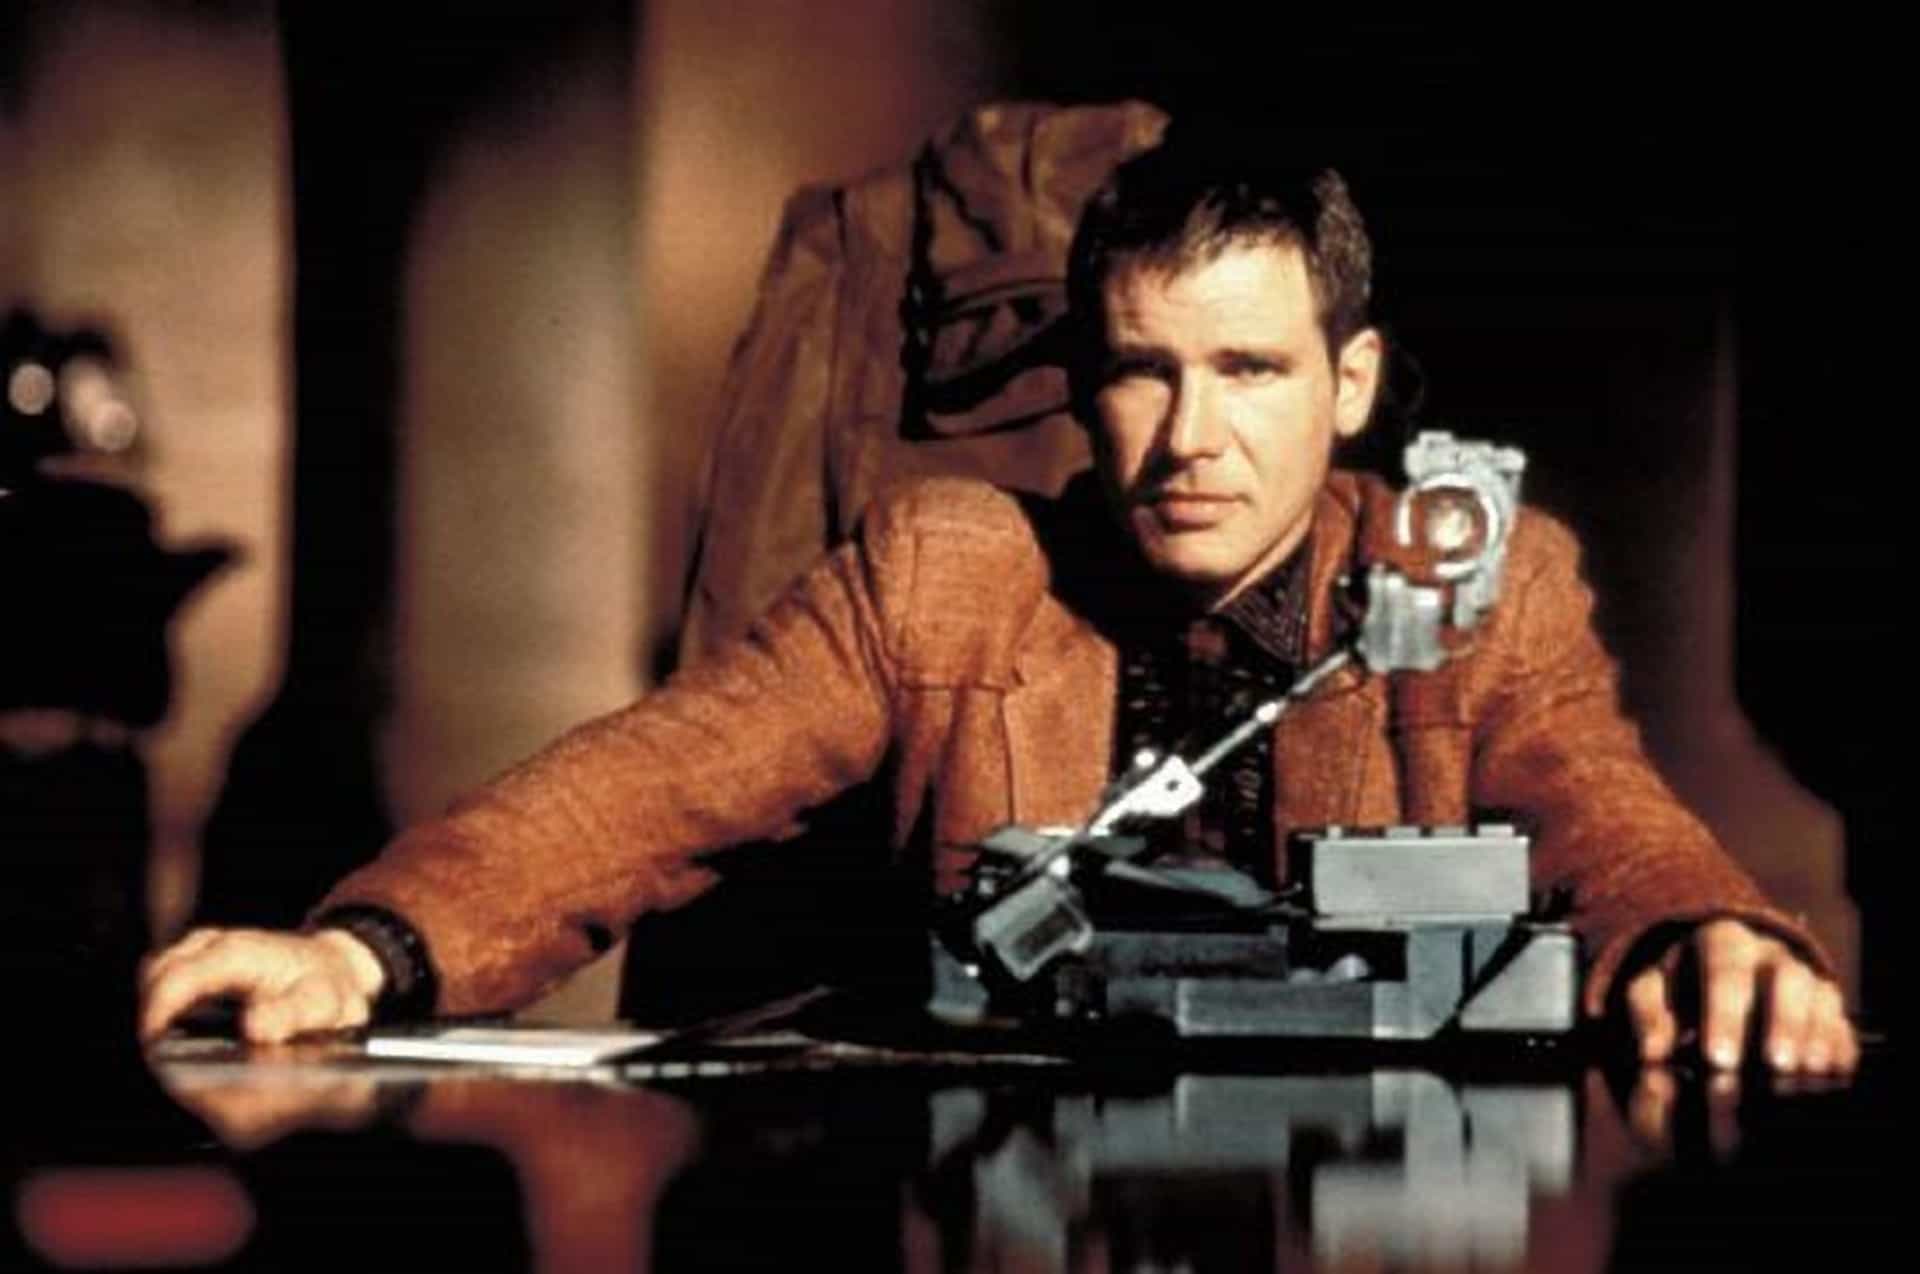 Ridley Scotts epischer, futuristischer Science-Fiction-Film war anfangs nicht sehr erfolgreich, aber die künstlerische Gestaltung, die moderne Film-Noir-Atmosphäre, das Mysterium, die Musik und die Schauspieler haben ihm einen Platz in der Ruhmeshalle des Kults gesichert.